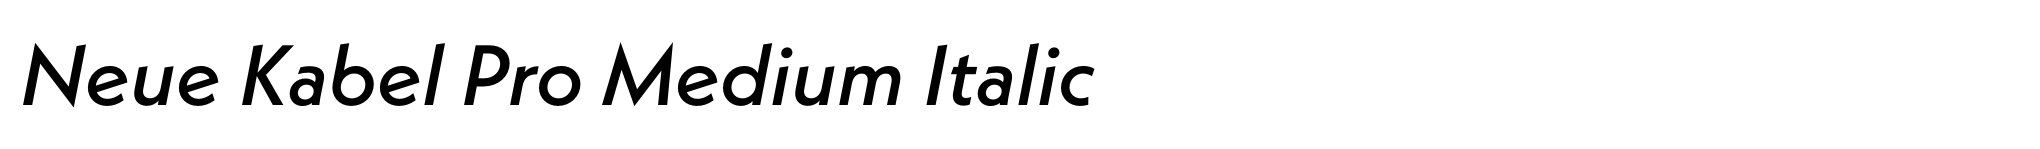 Neue Kabel Pro Medium Italic image